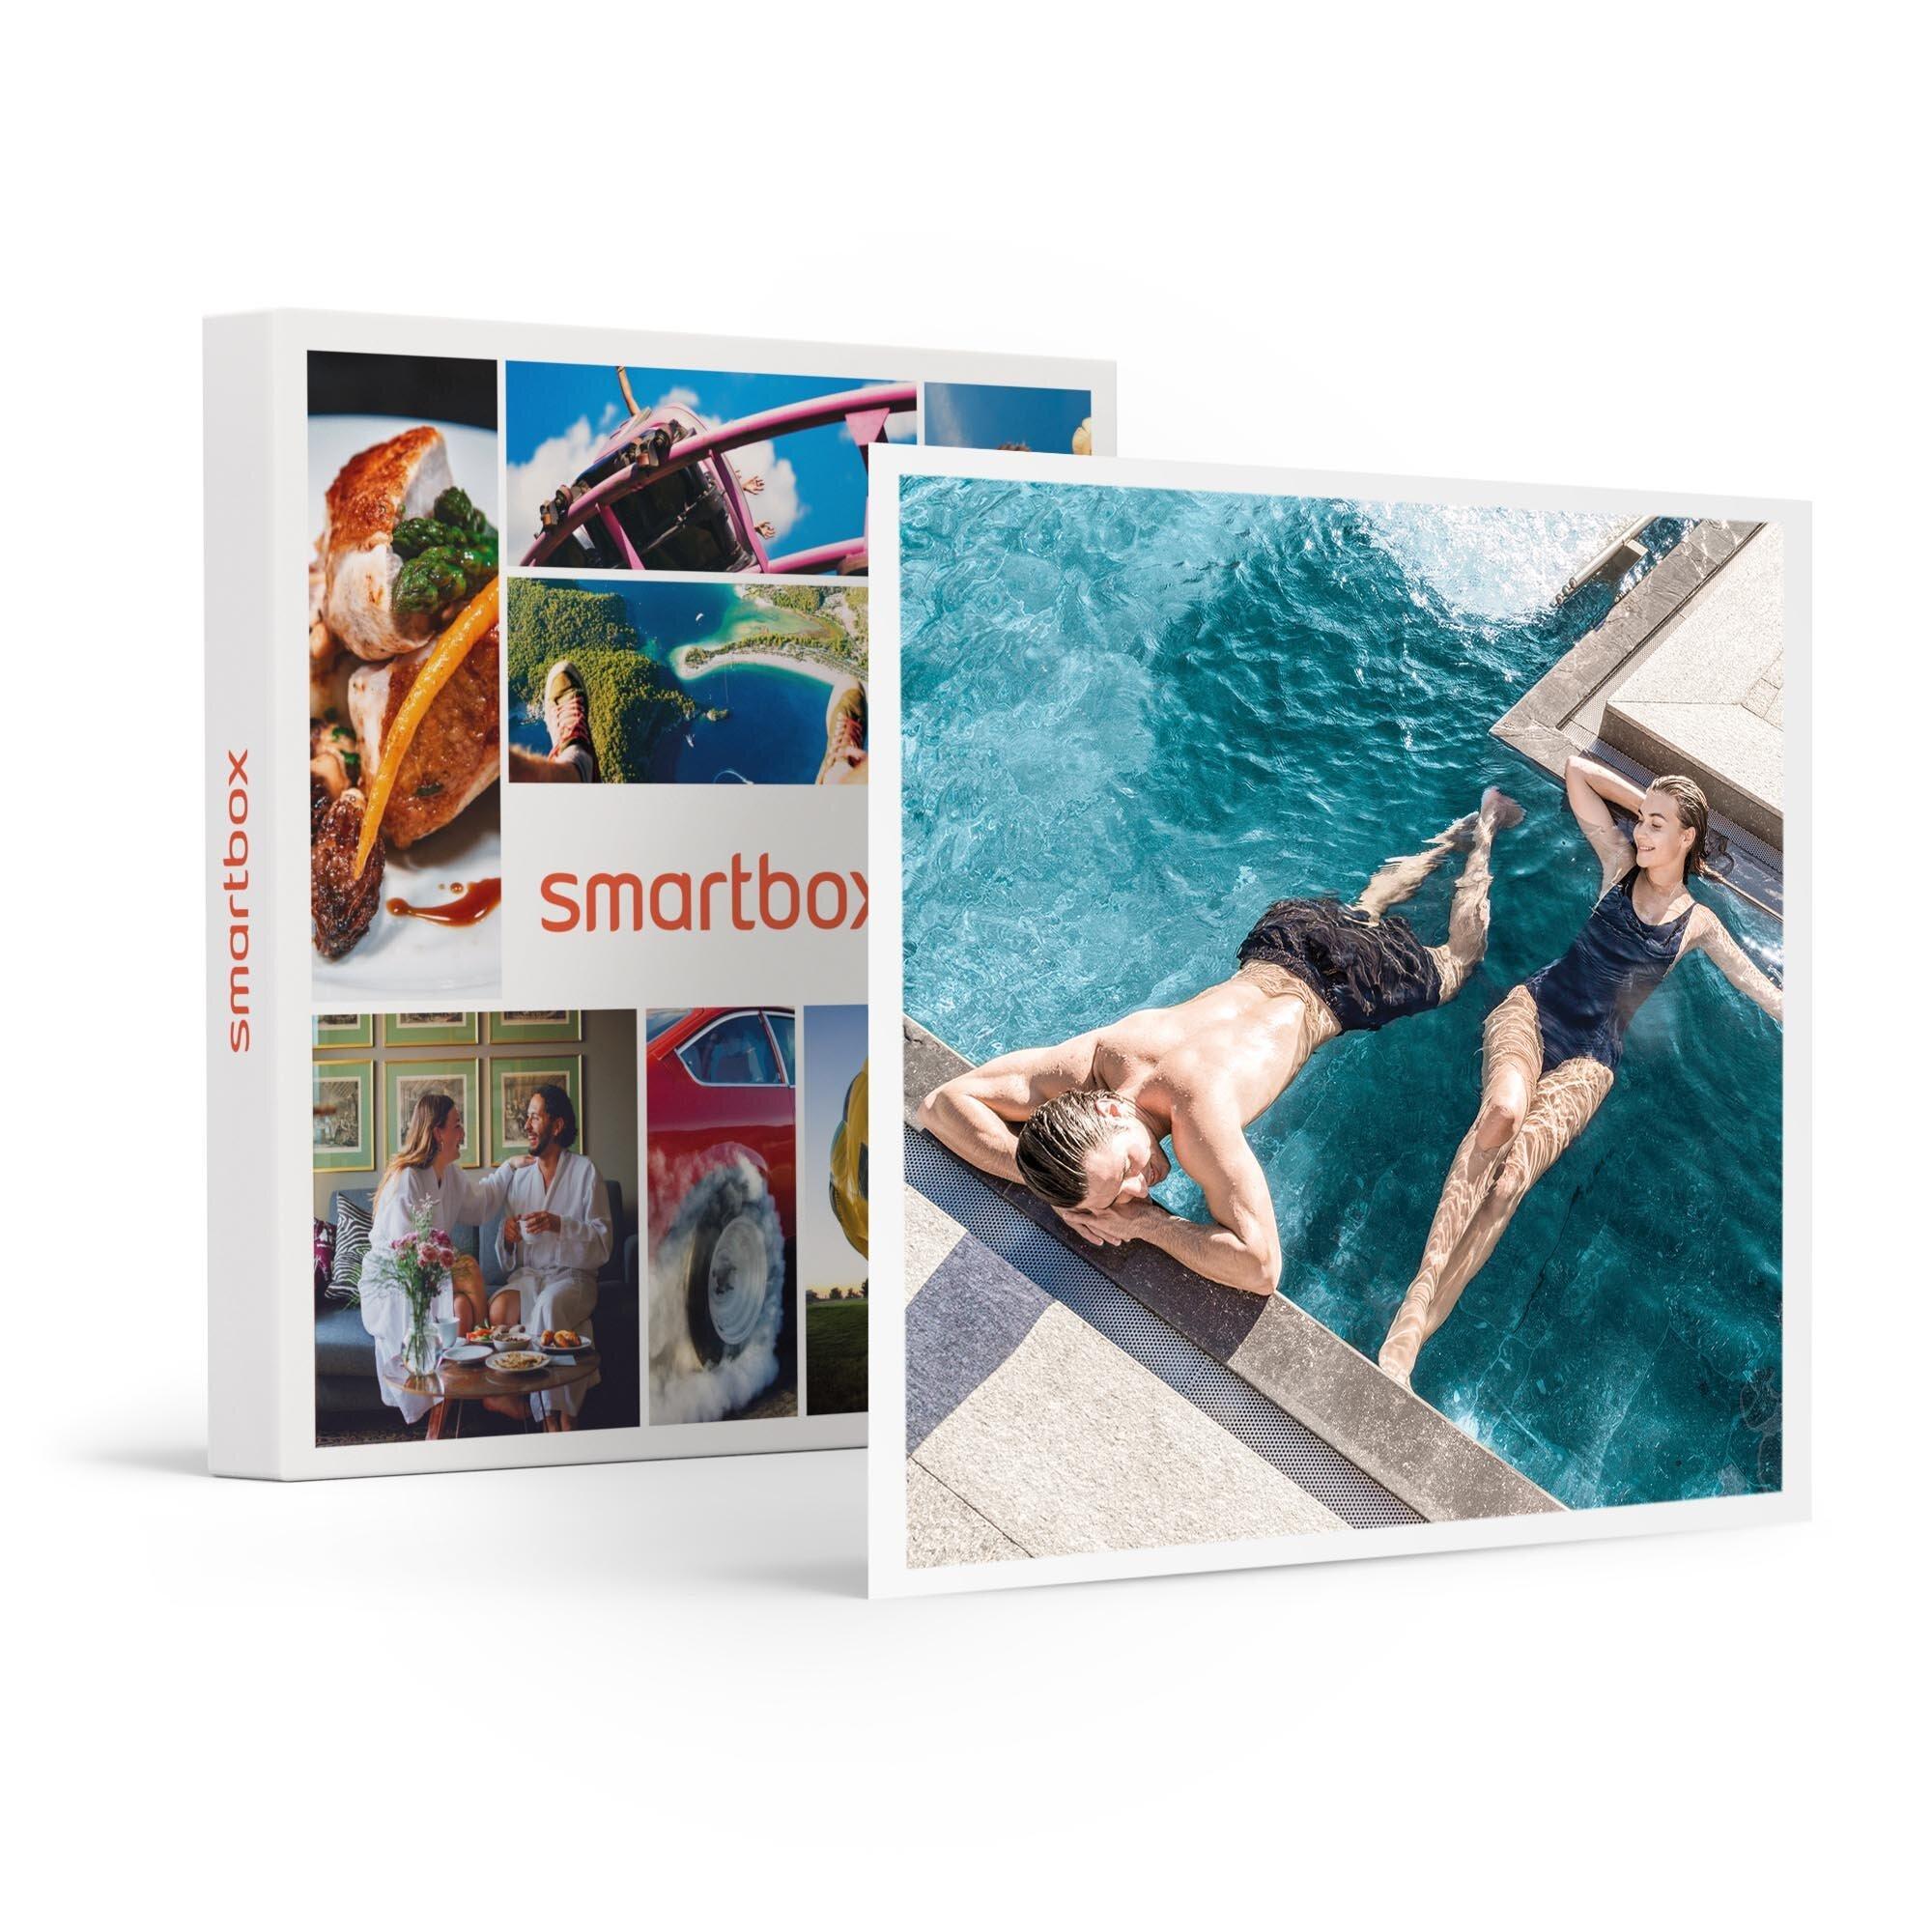 Smartbox Puro relax in Italia: 1 notte in resort QC Terme con accesso alla  Spa - Cofanetto regalo